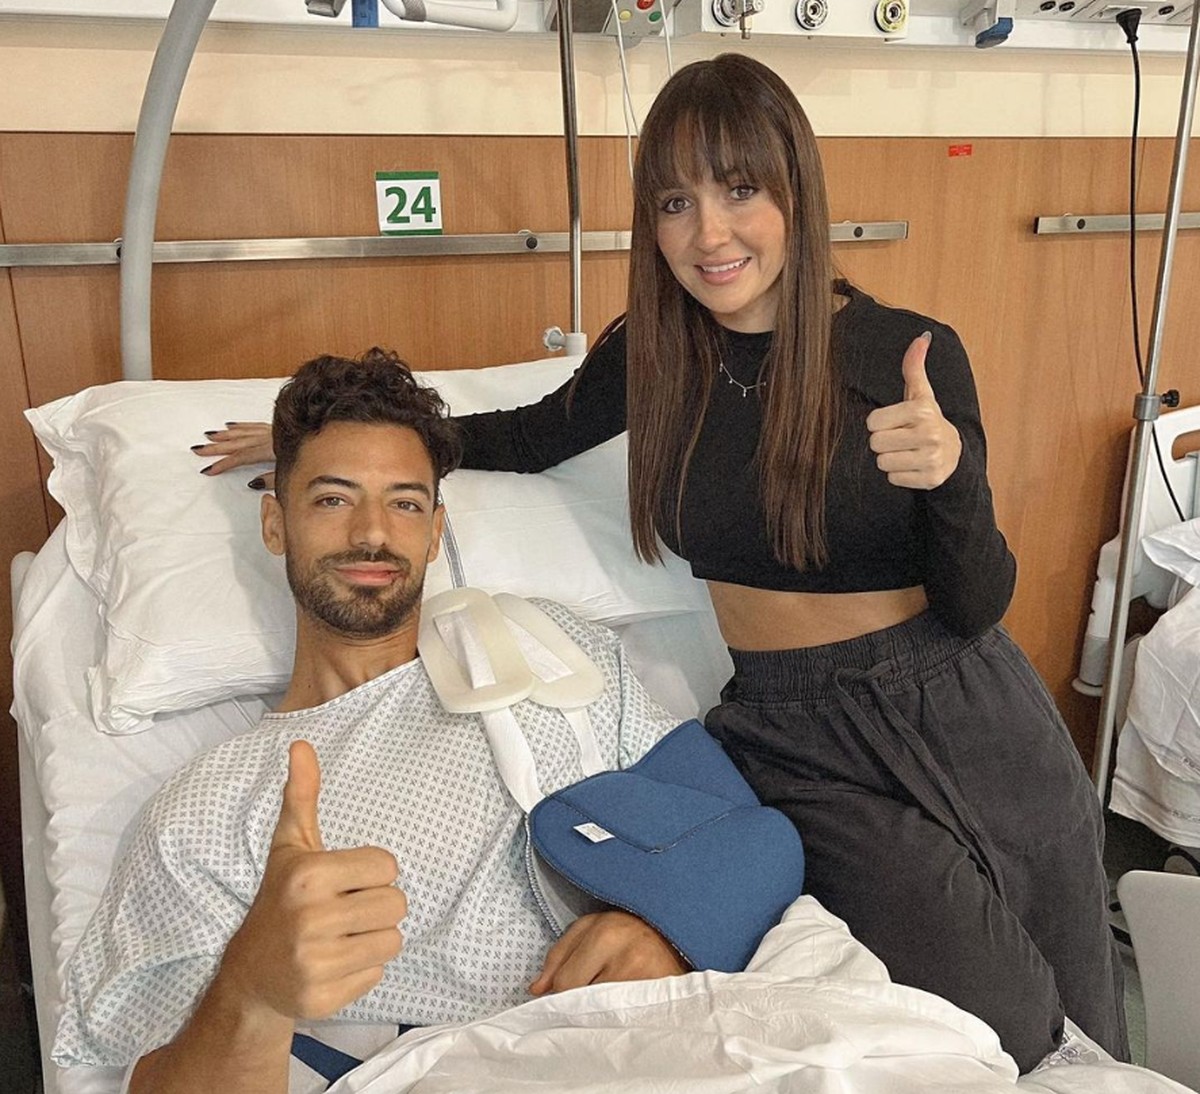 Pablo culpa cirurgia desnecessária por inatividade no futebol